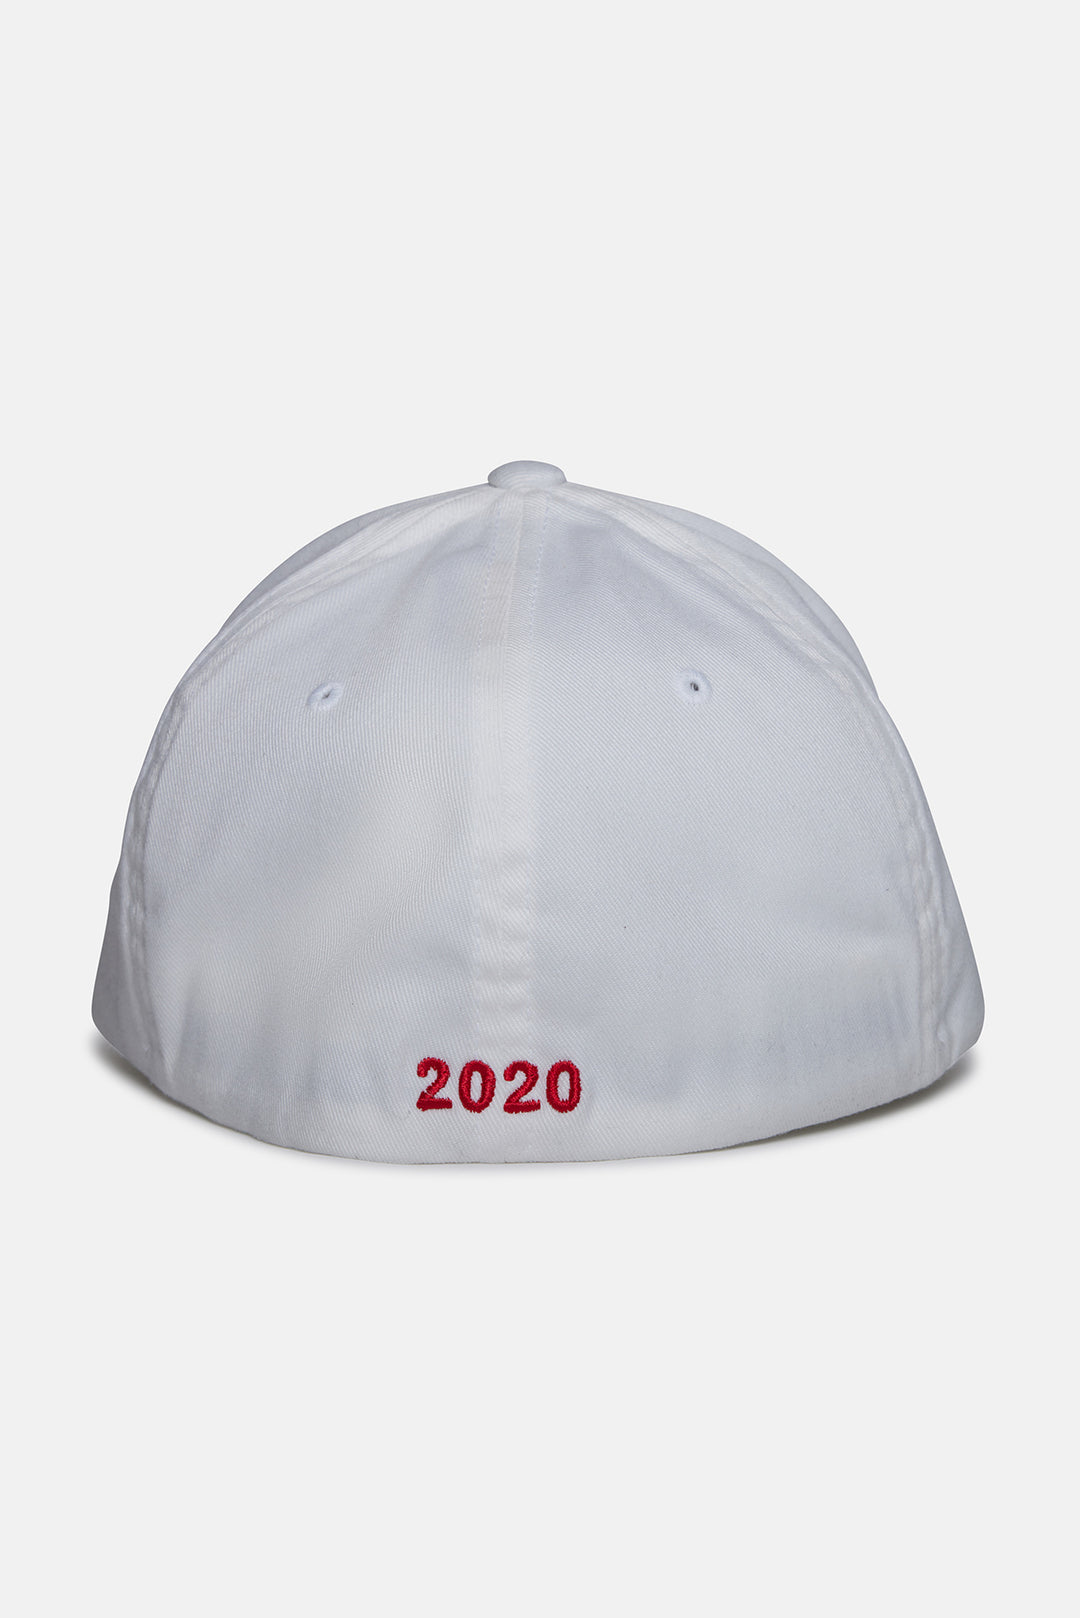 2020 Blue&Cream Election Flex Fit Hat White